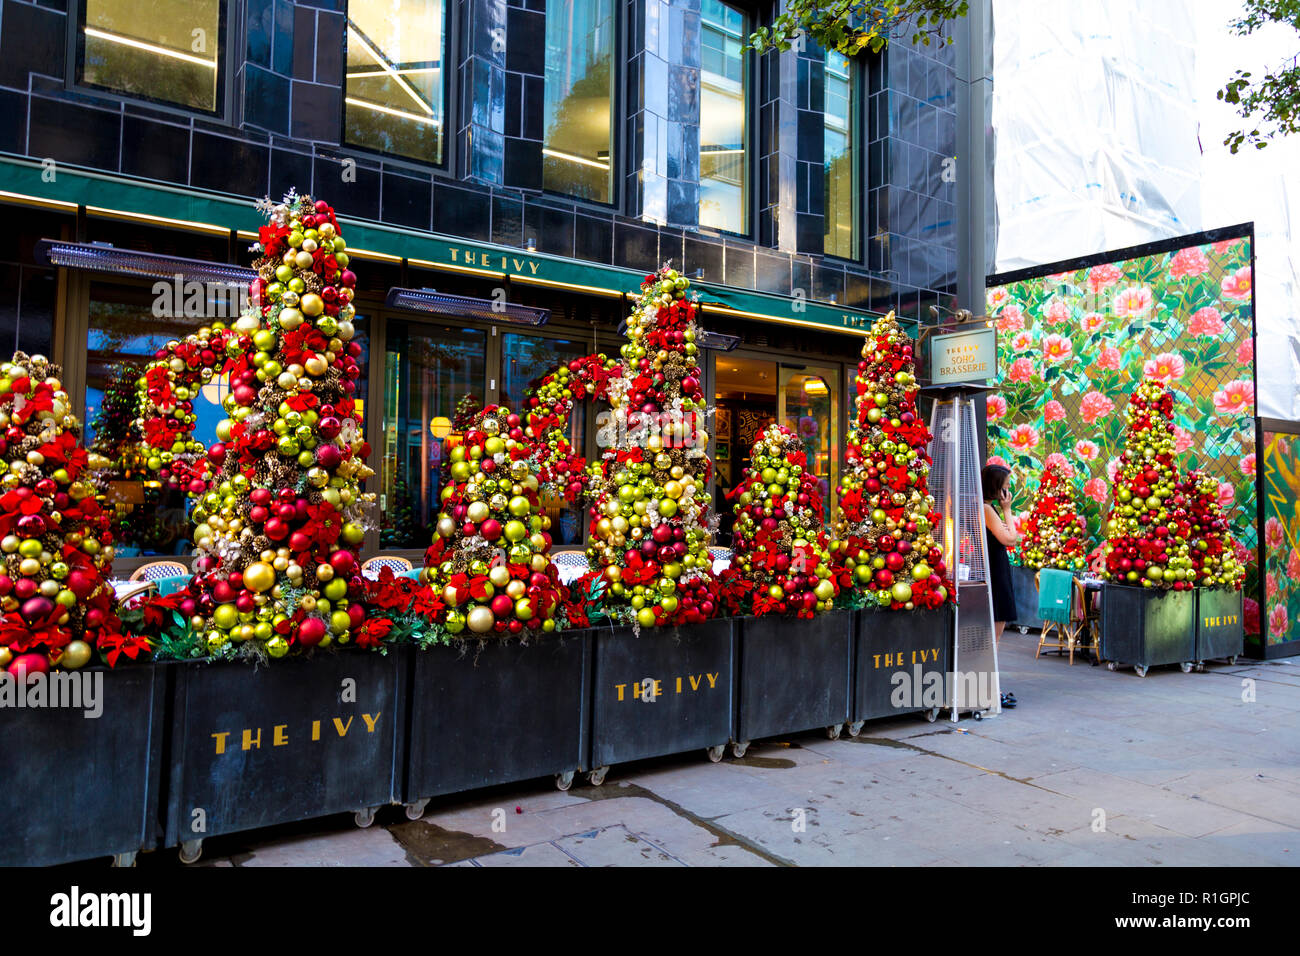 Adornos Navideños en el Ivy Brasserie de Soho, Londres, Reino Unido. Foto de stock